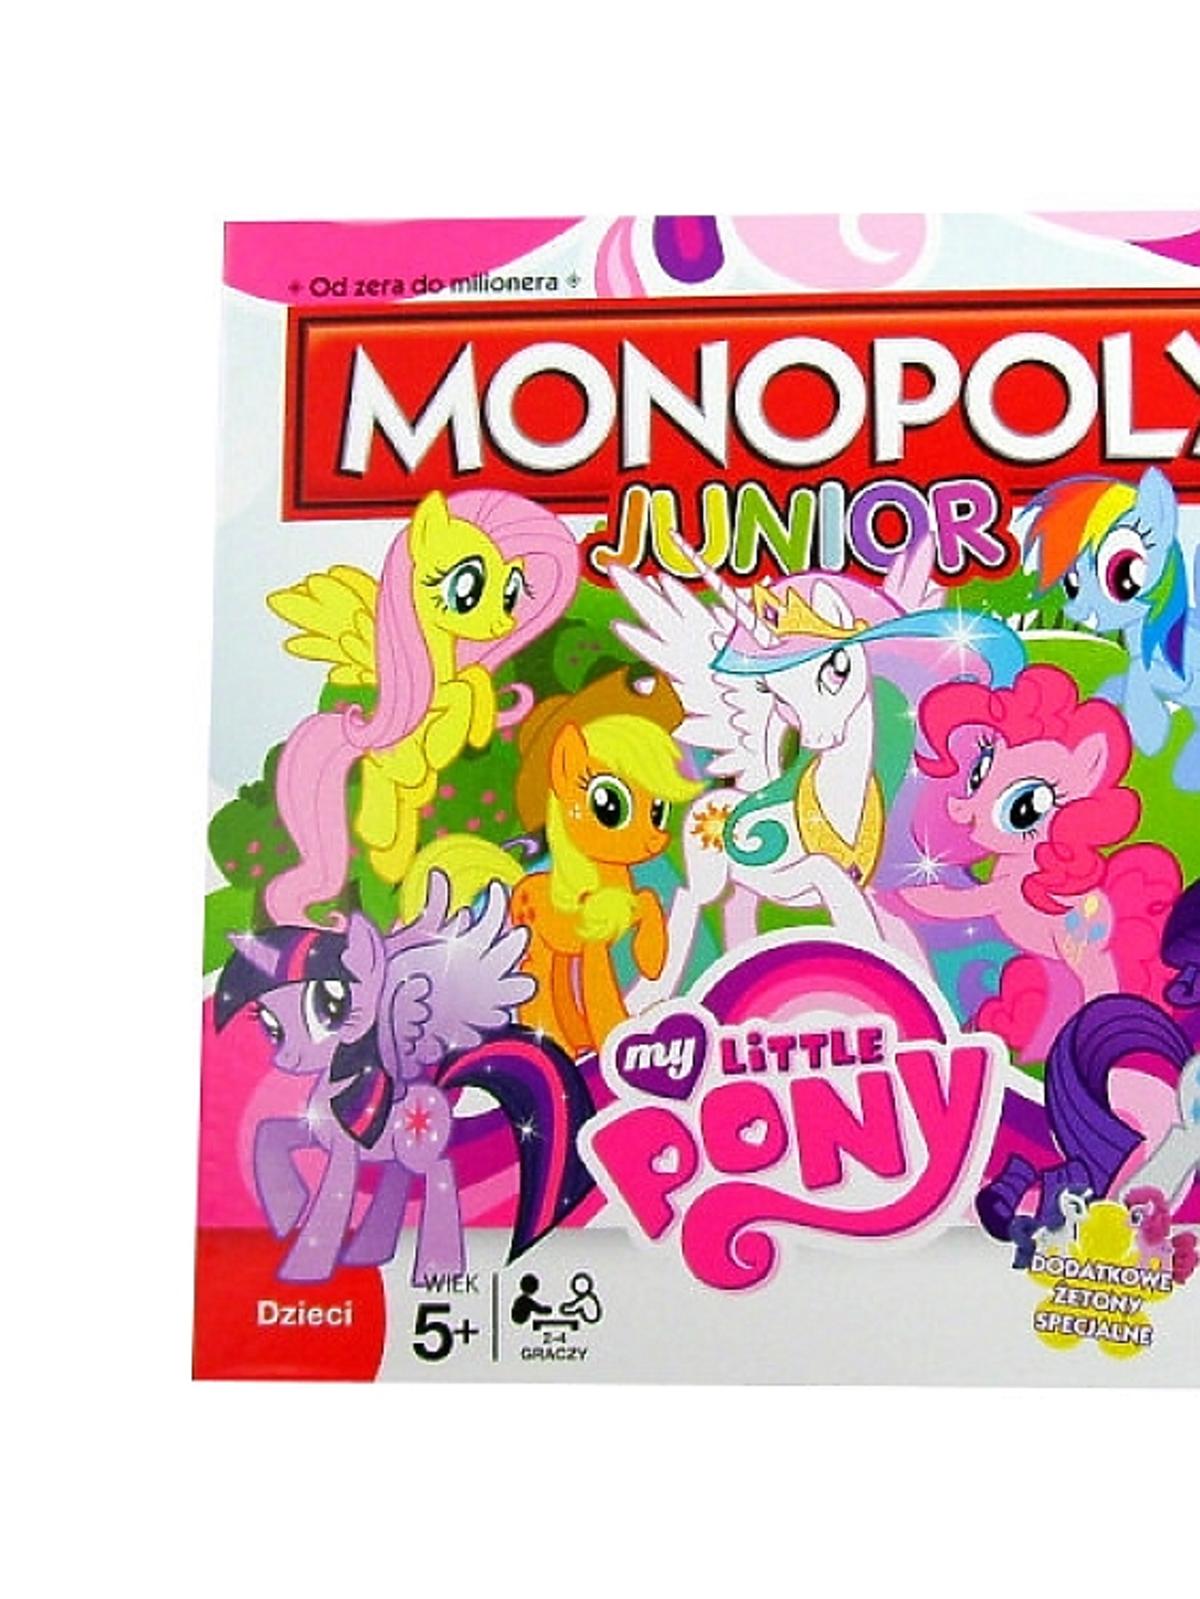 gra ekonomiczna monopoly my little pony 72.99zł smyk.com.jpg